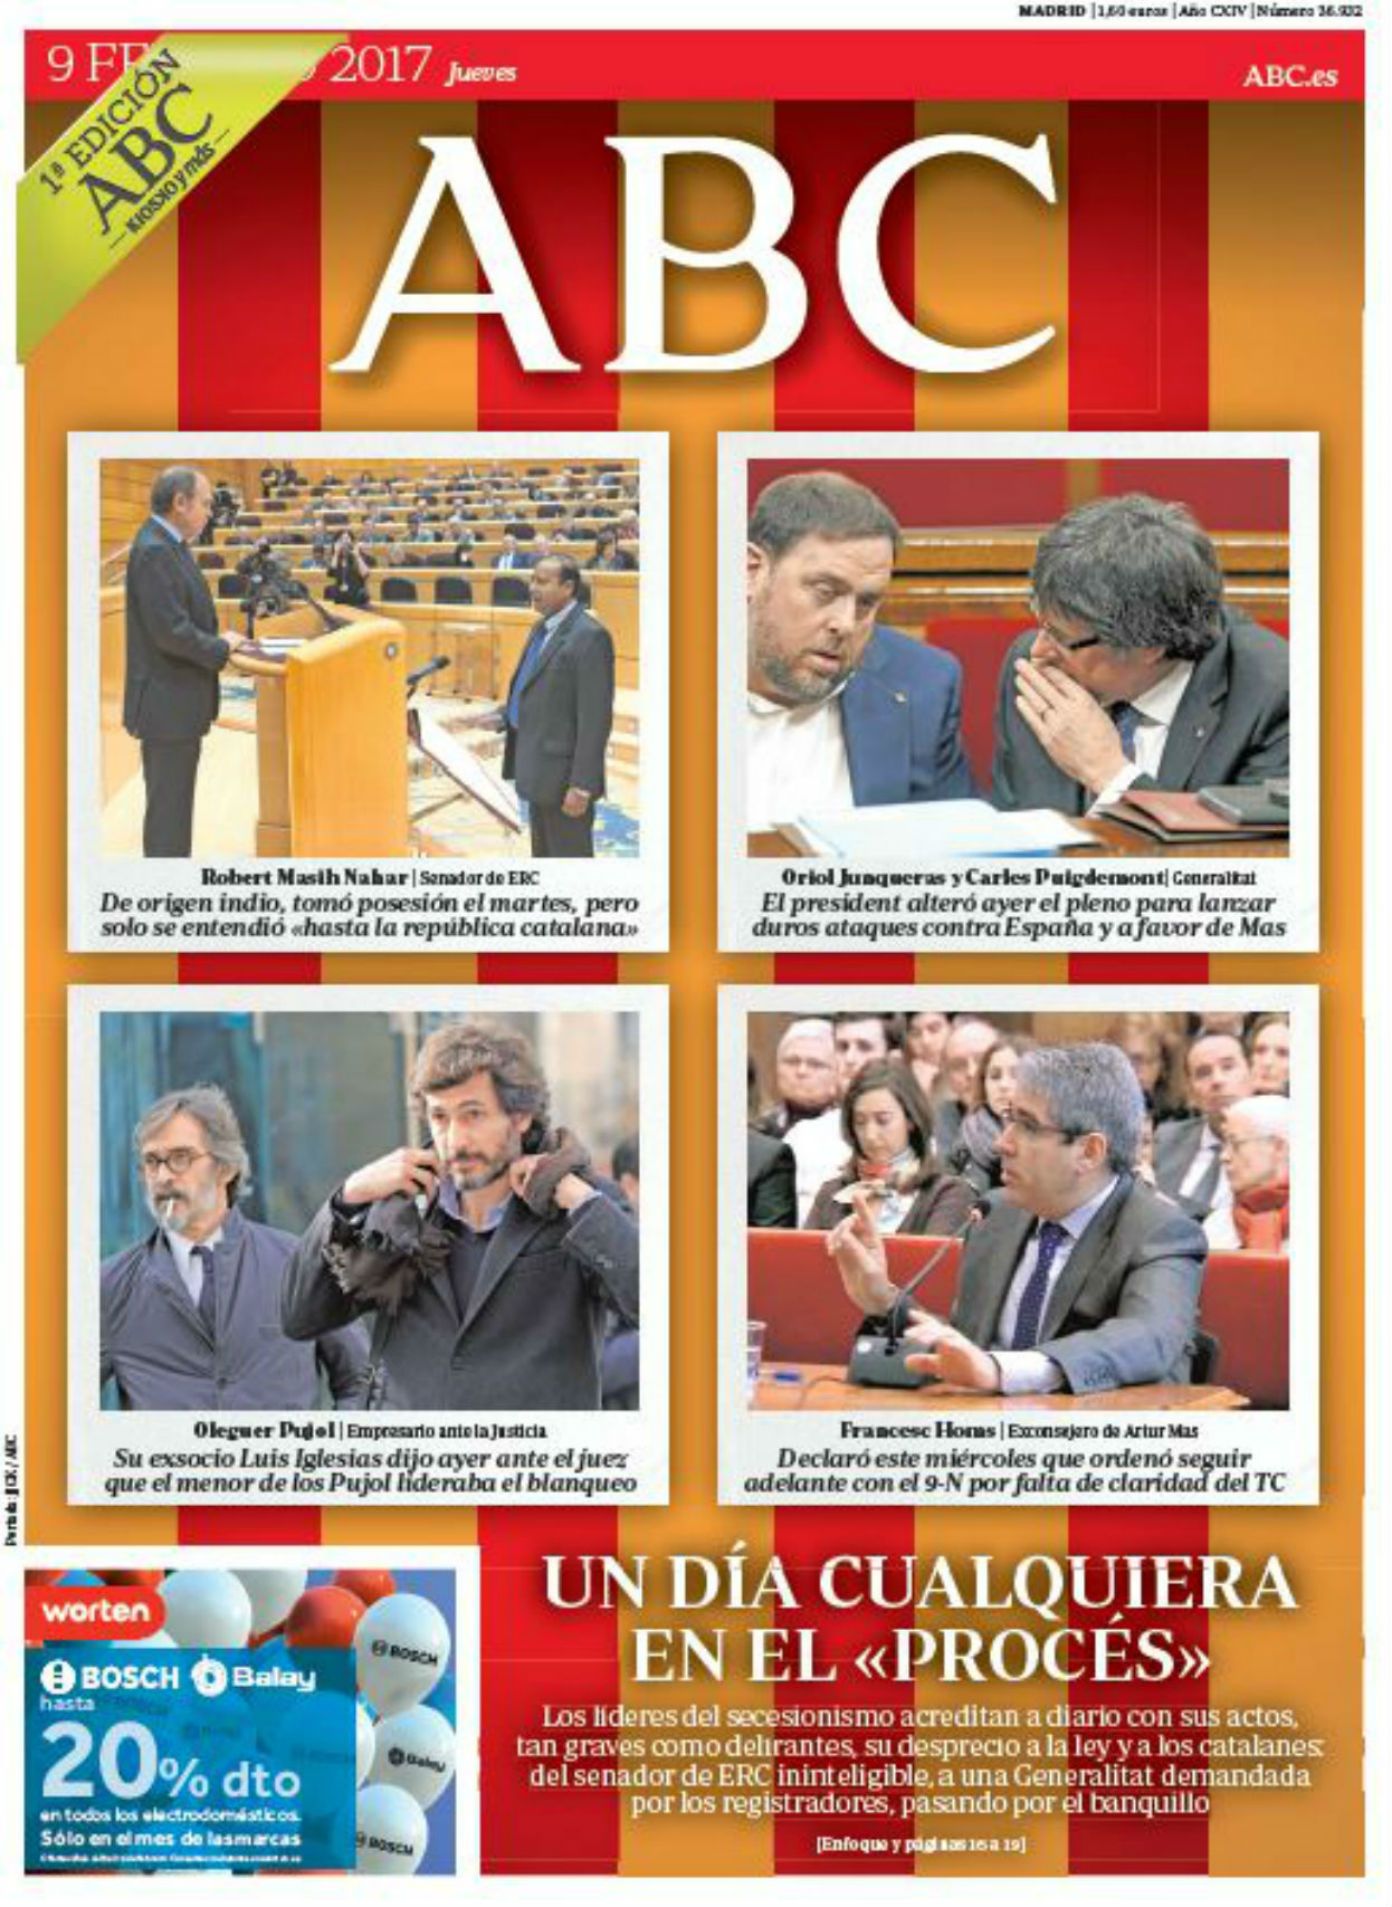 "La política o la fuerza en Catalunya", en la prensa estatal